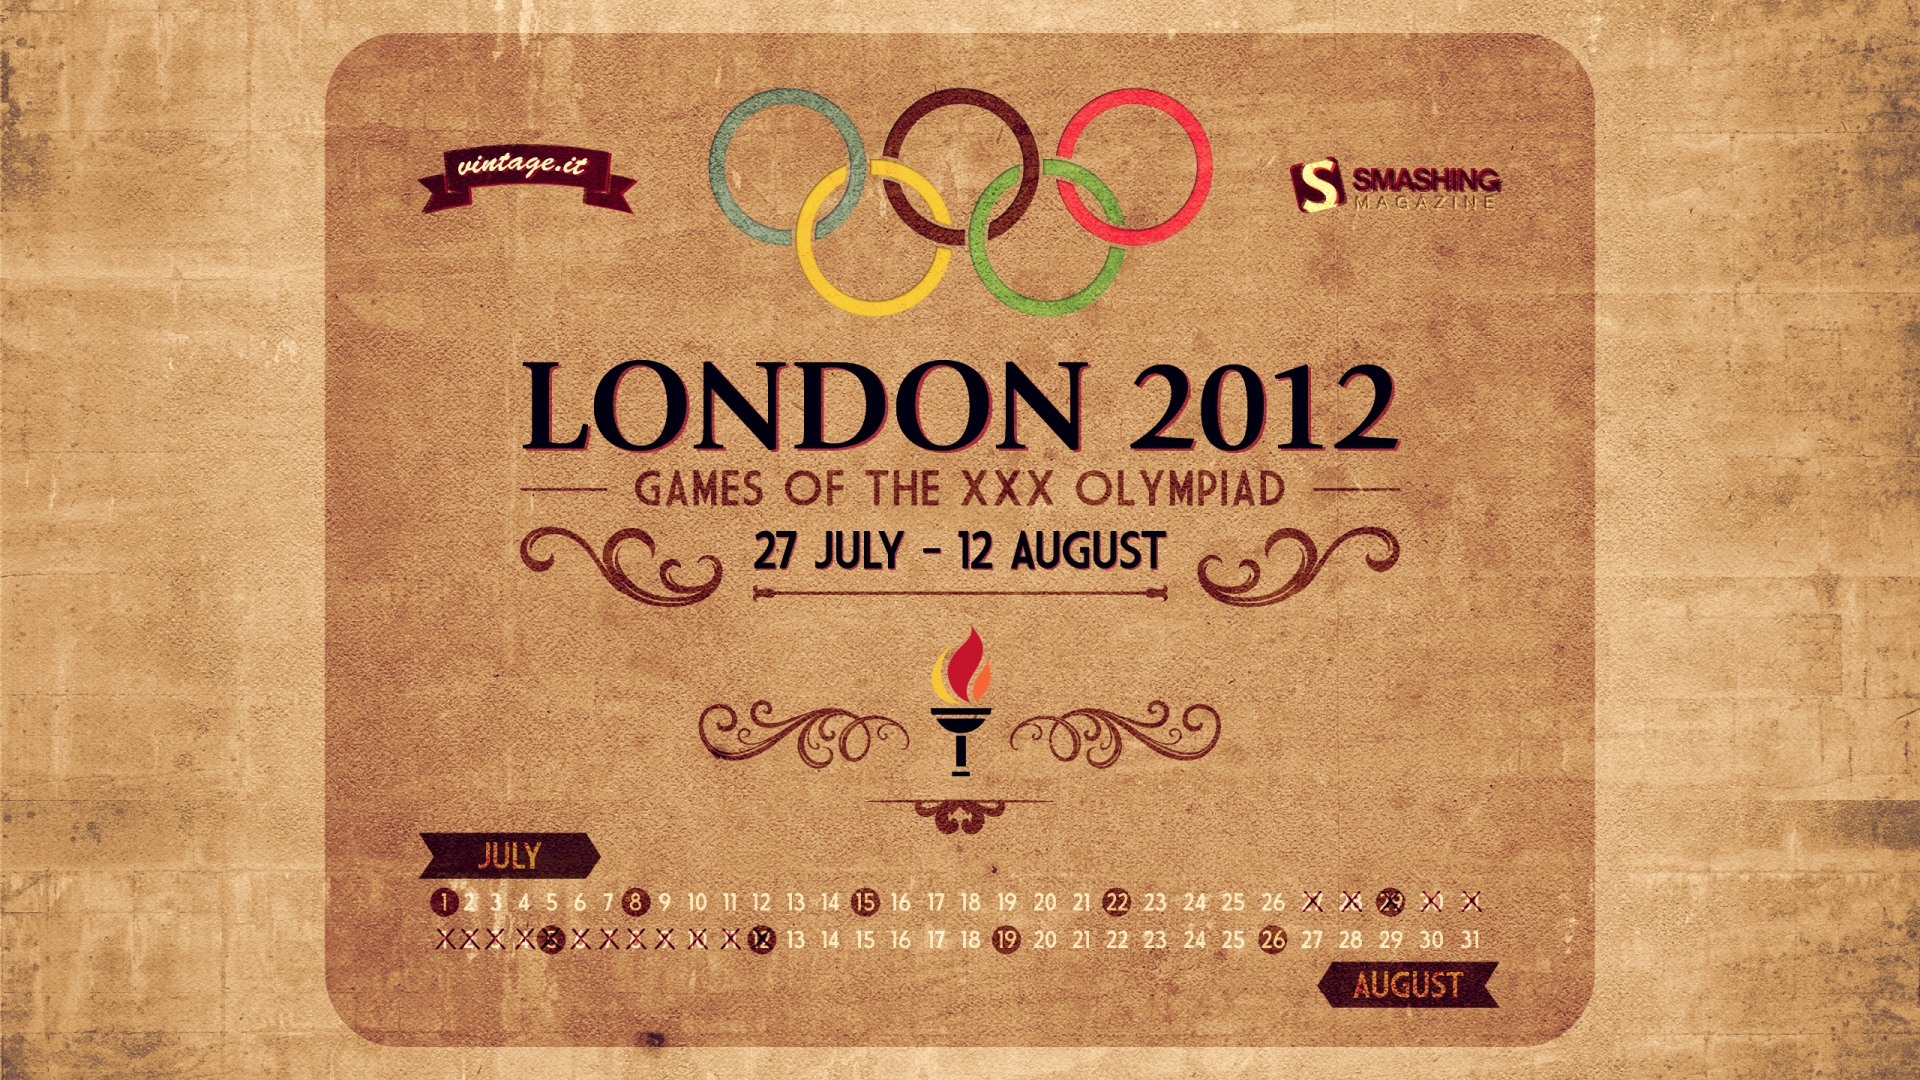 Londres 2012 Olimpiadas fondos temáticos (1) #24 - 1920x1080